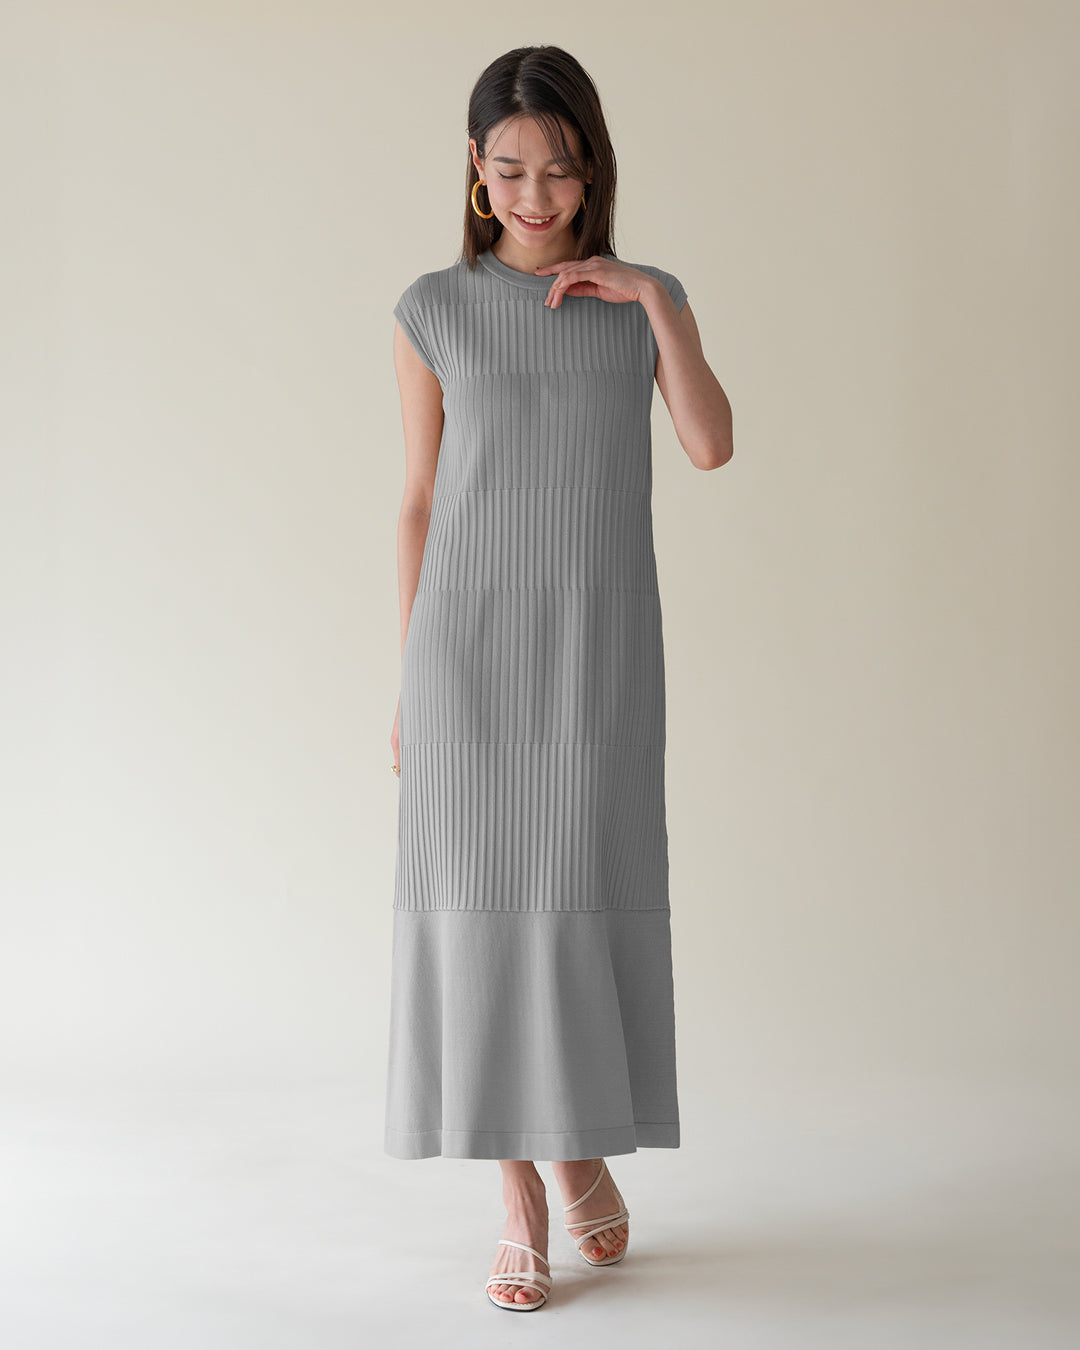 Multi-rib knit dress